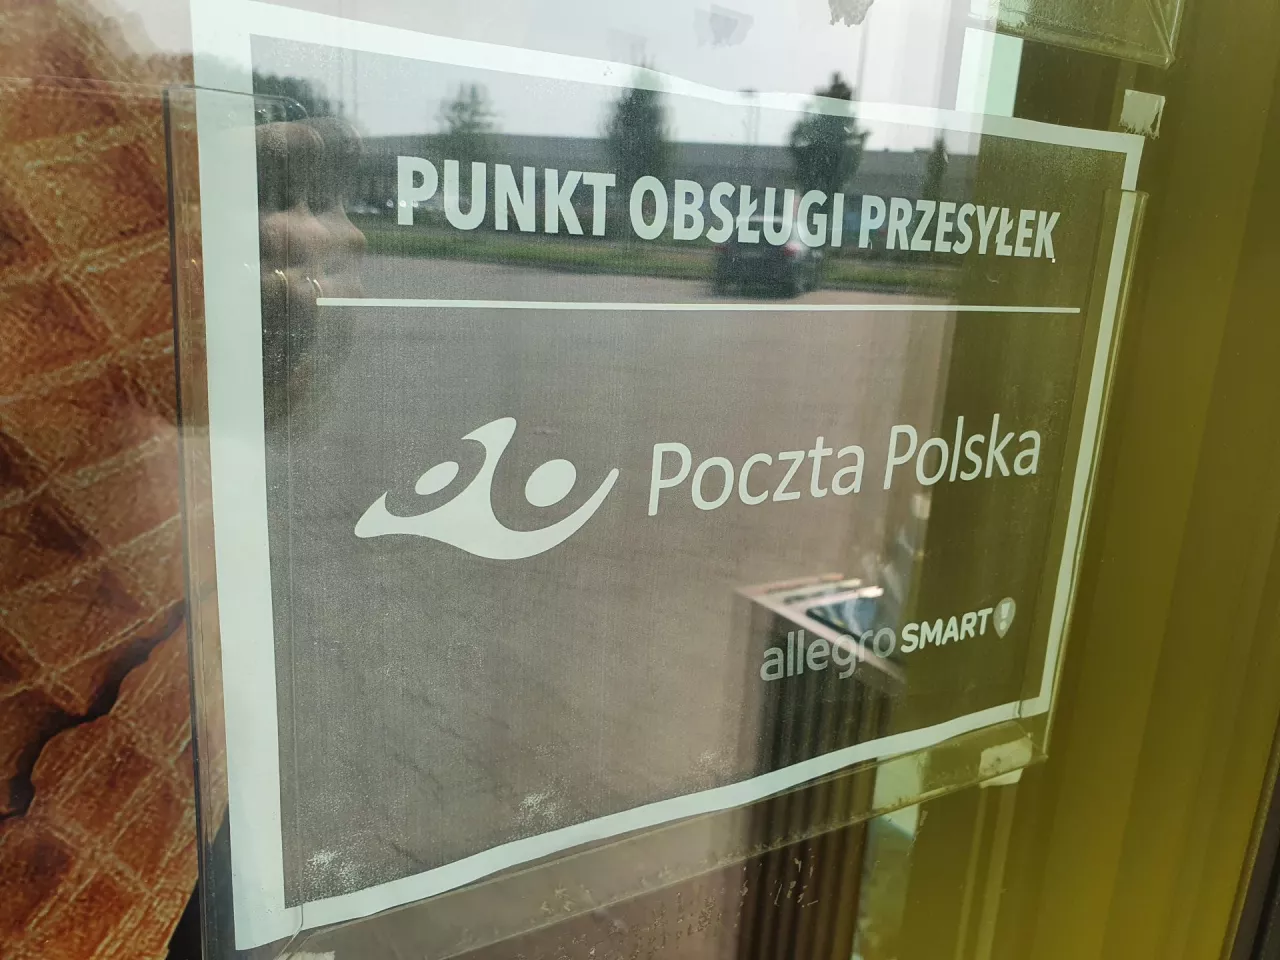 Niektóre Biedronki współpracują z Pocztą Polską. Stały się placówkami pocztowymi, co pozwala na handel w niedziele (fot. wiadomoscihandlowe.pl)